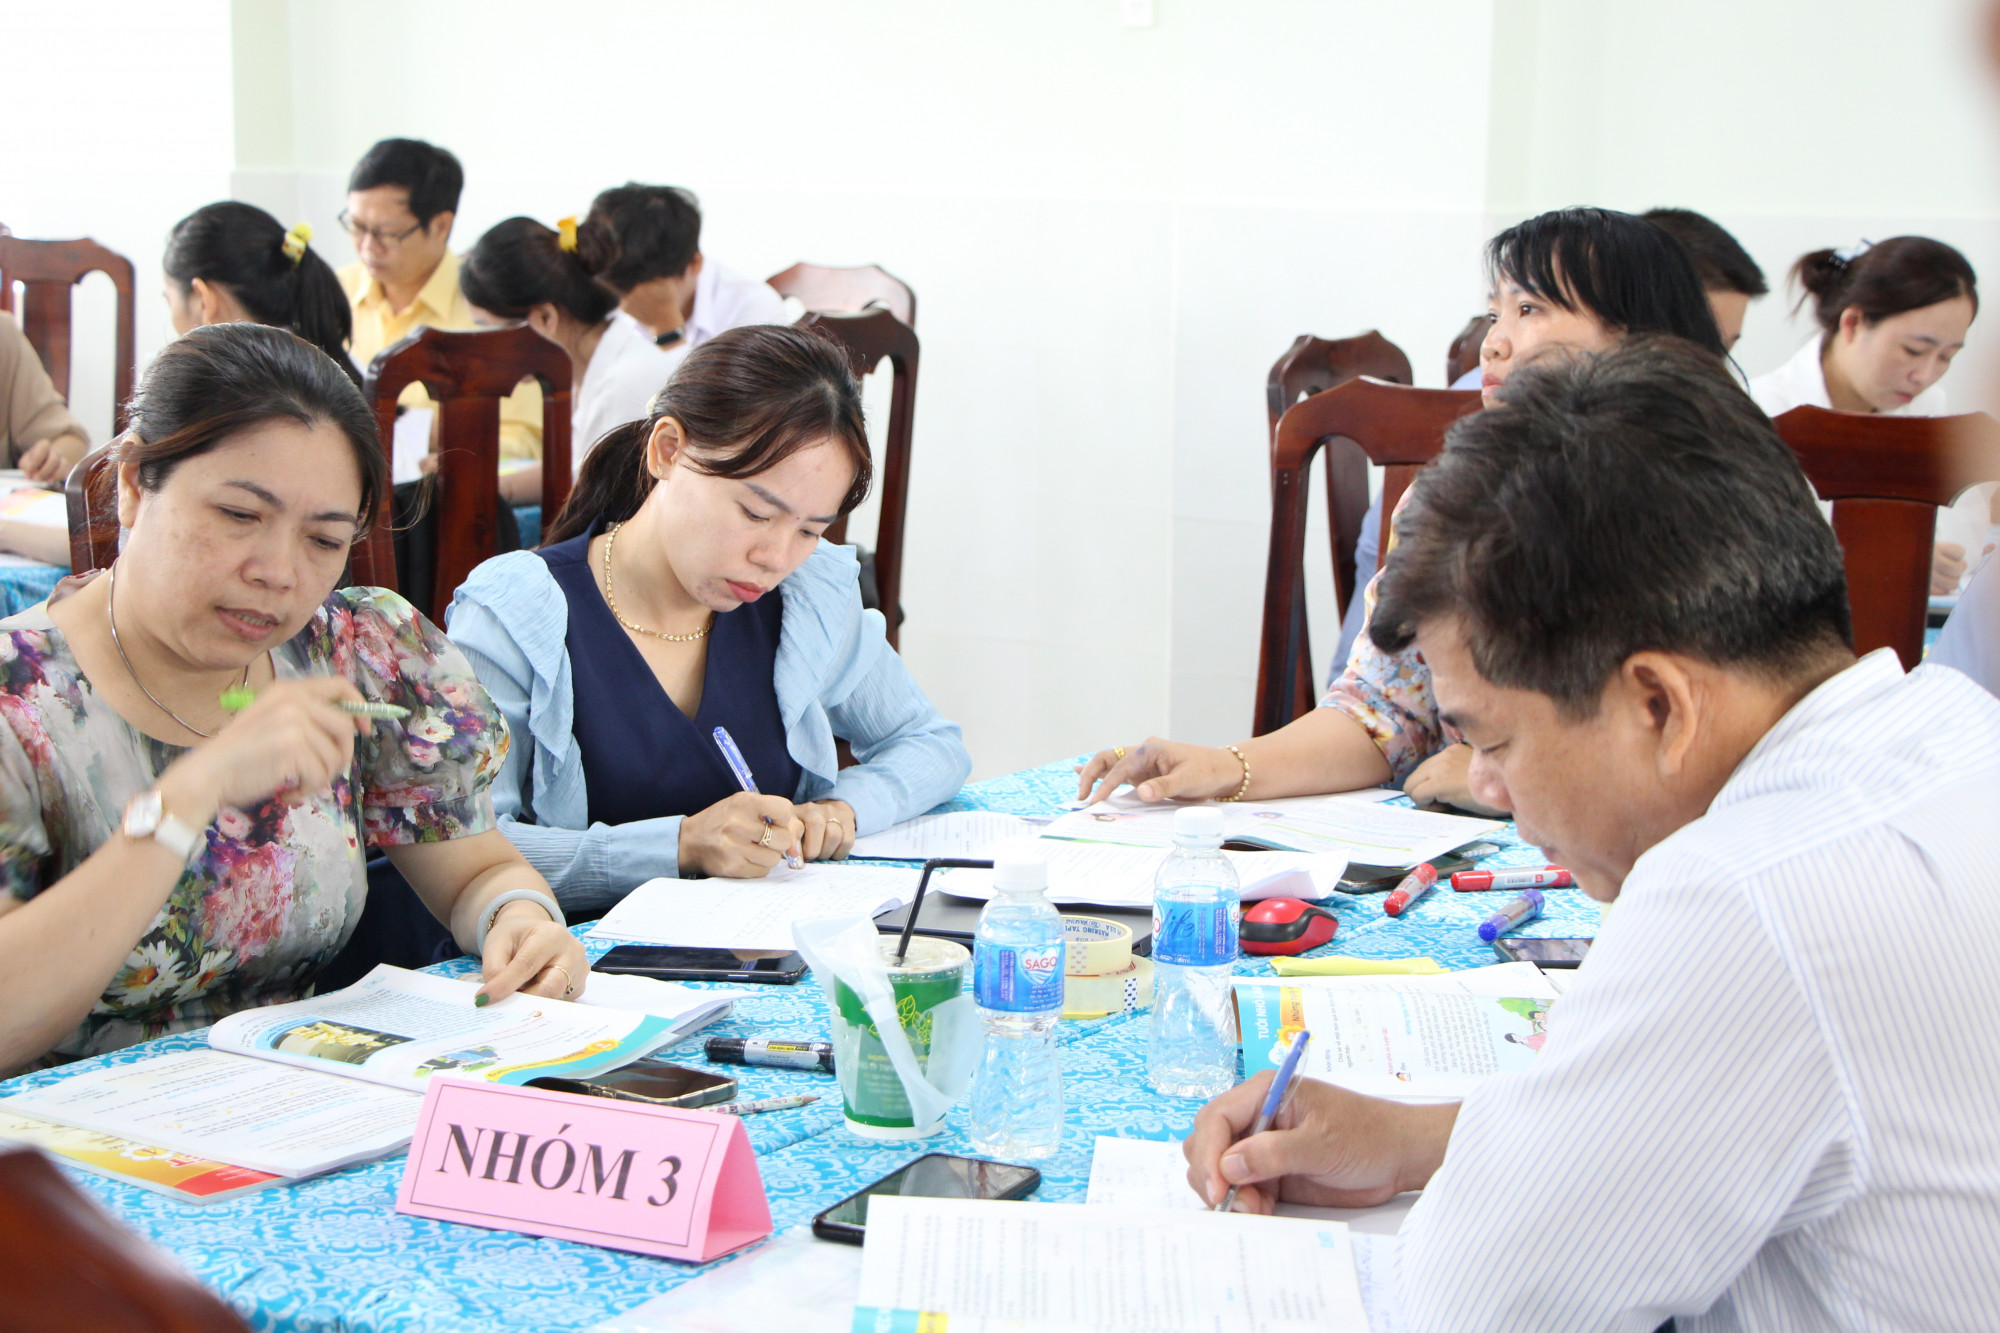 Phó giám đốc Sở GD-ĐT TPHCM Nguyễn Bảo Quốc yêu cầu trường tránh hình thức khi xây dựng kế hoạch giáo dục